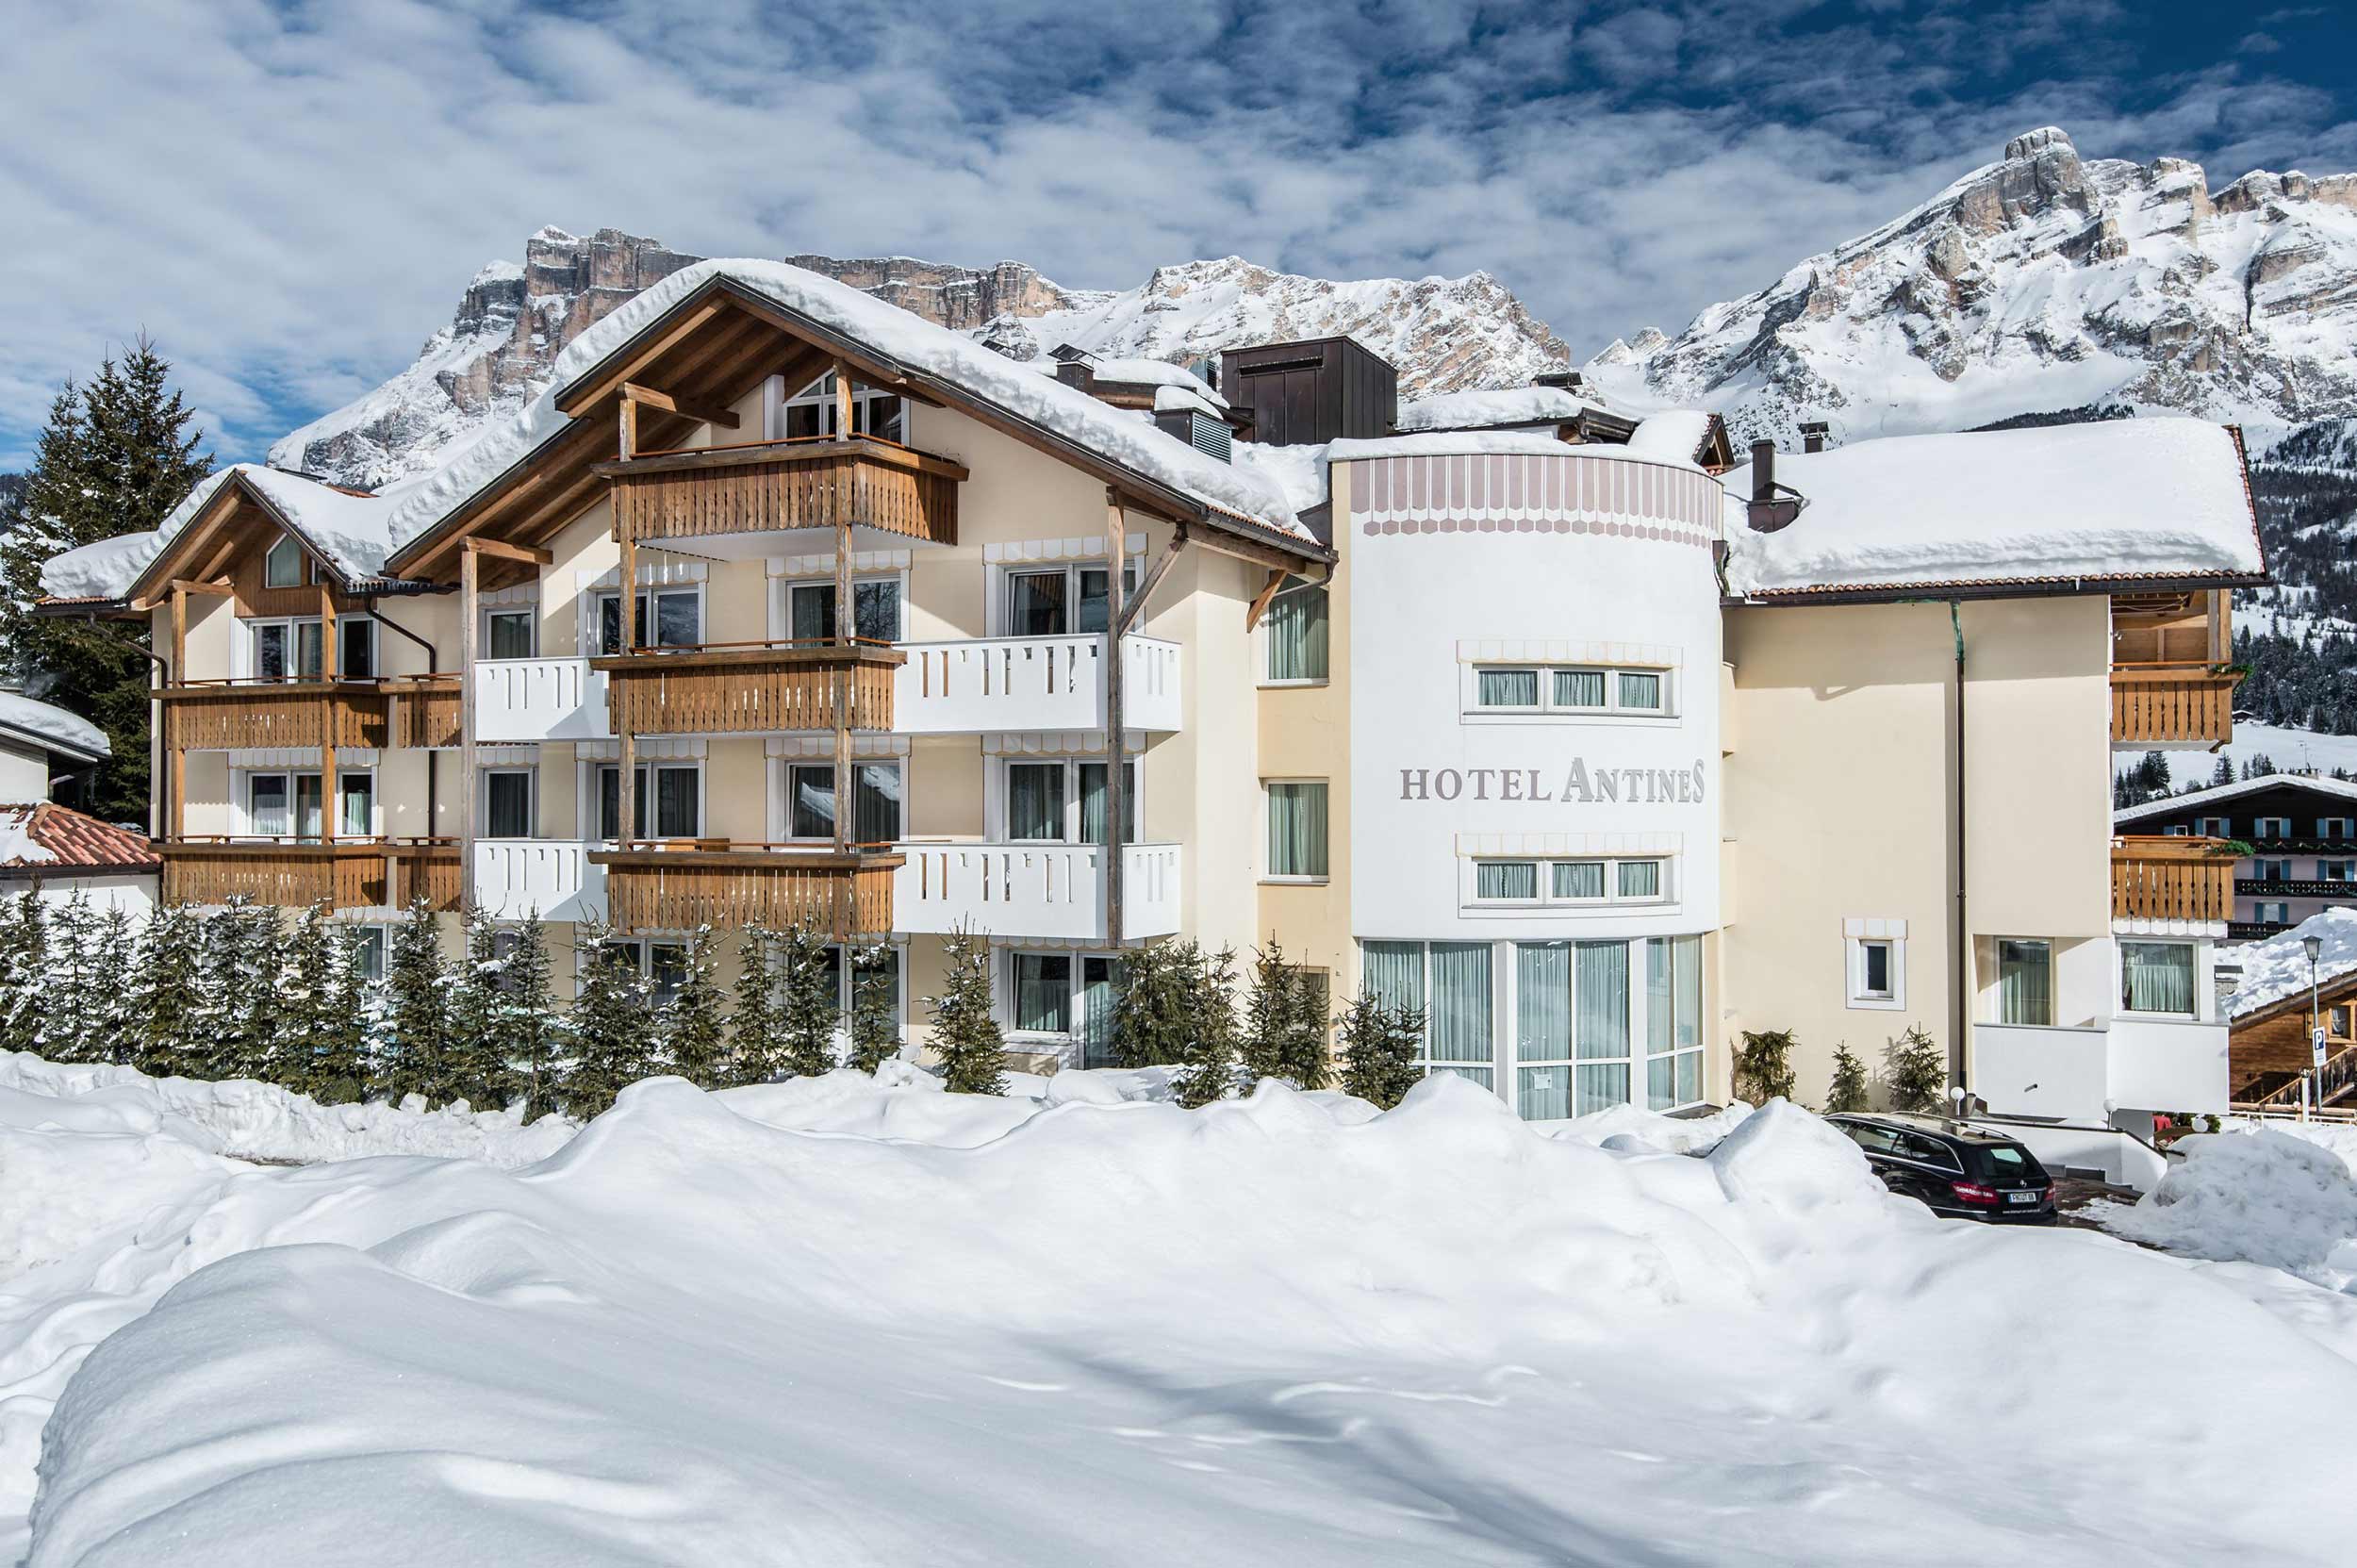 Hotel antines winter alta badia6